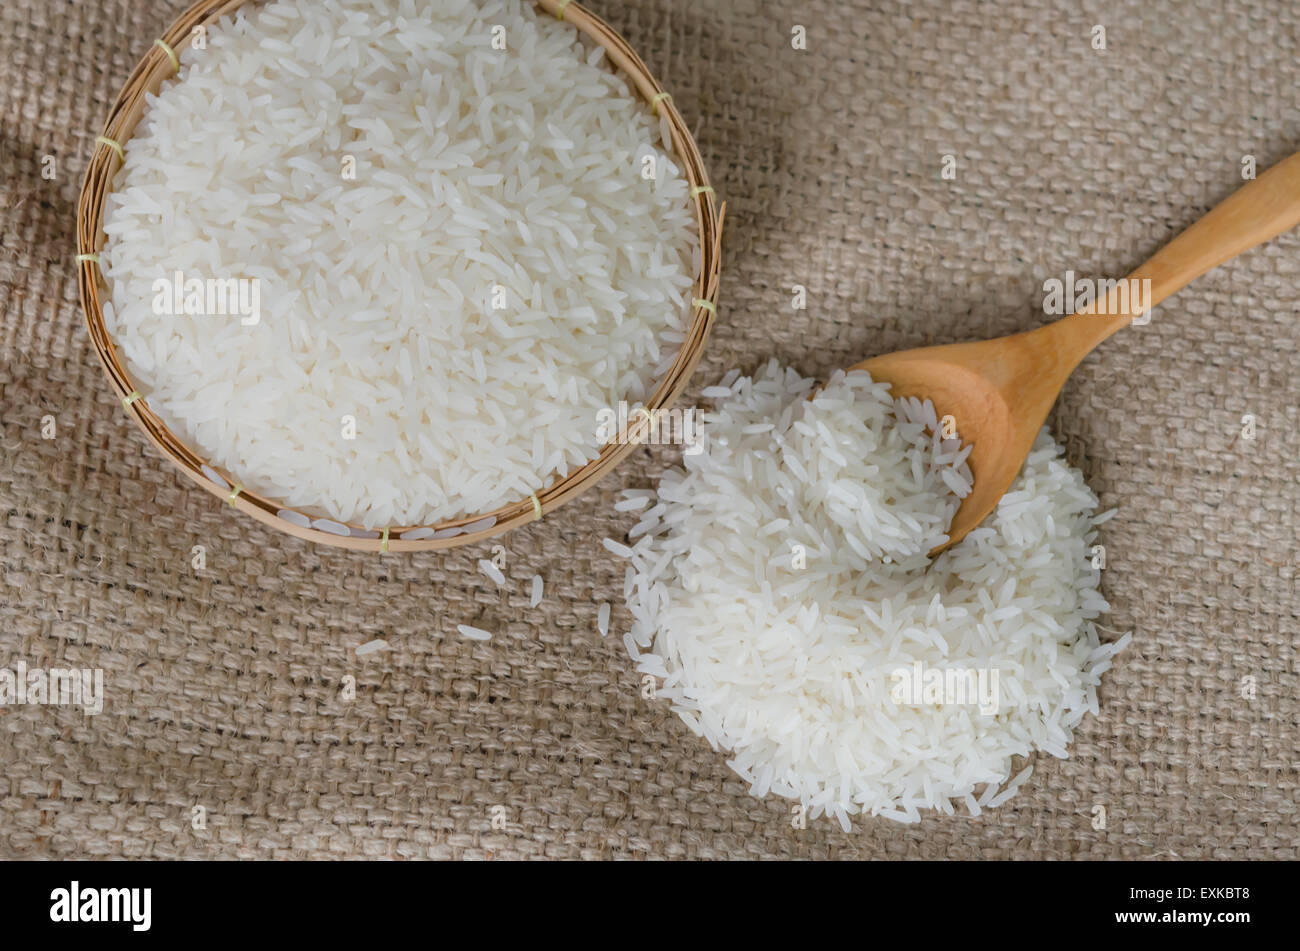 Les grains de riz blanc avec cuillère en bois sur le sac Banque D'Images